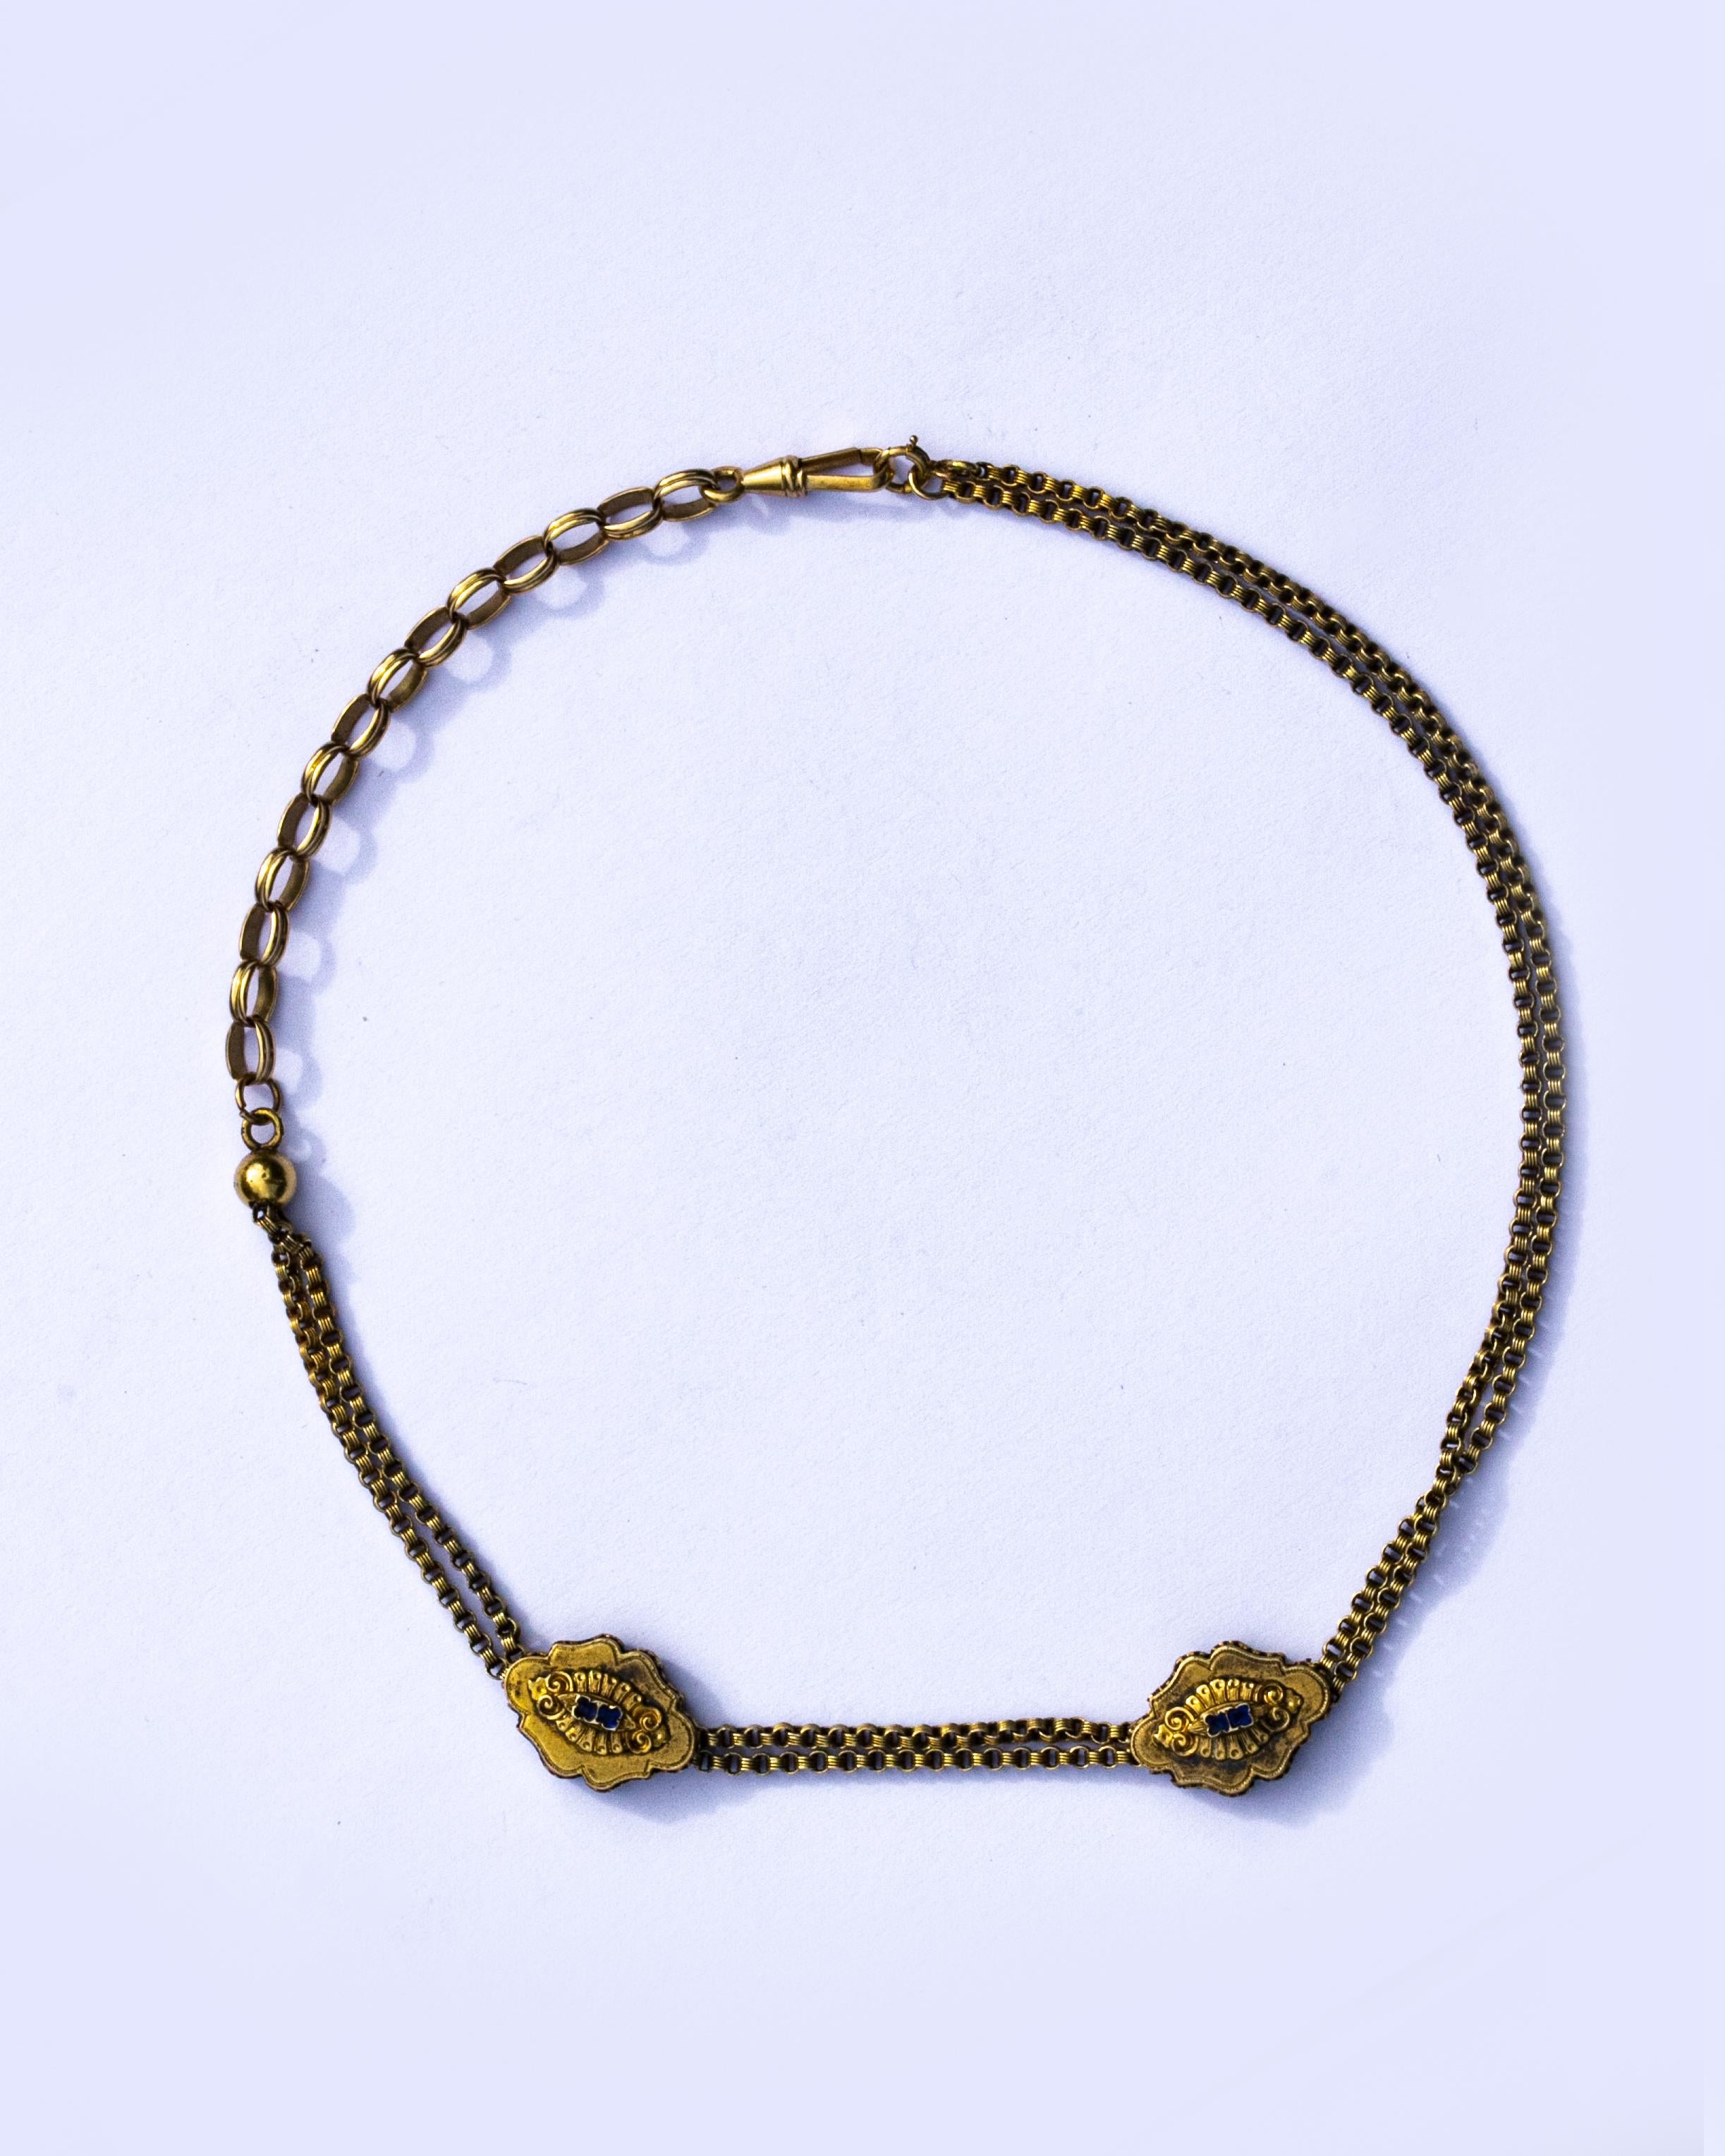 Diese wunderschöne Kette aus 15-karätigem Gold eignet sich hervorragend für eine Halskette mit zwei Schiebern an der Doppelkette. In jedem Schieber befinden sich zwei Saphire, die dem Schmuckstück einen zusätzlichen Farbakzent verleihen. Die Kette